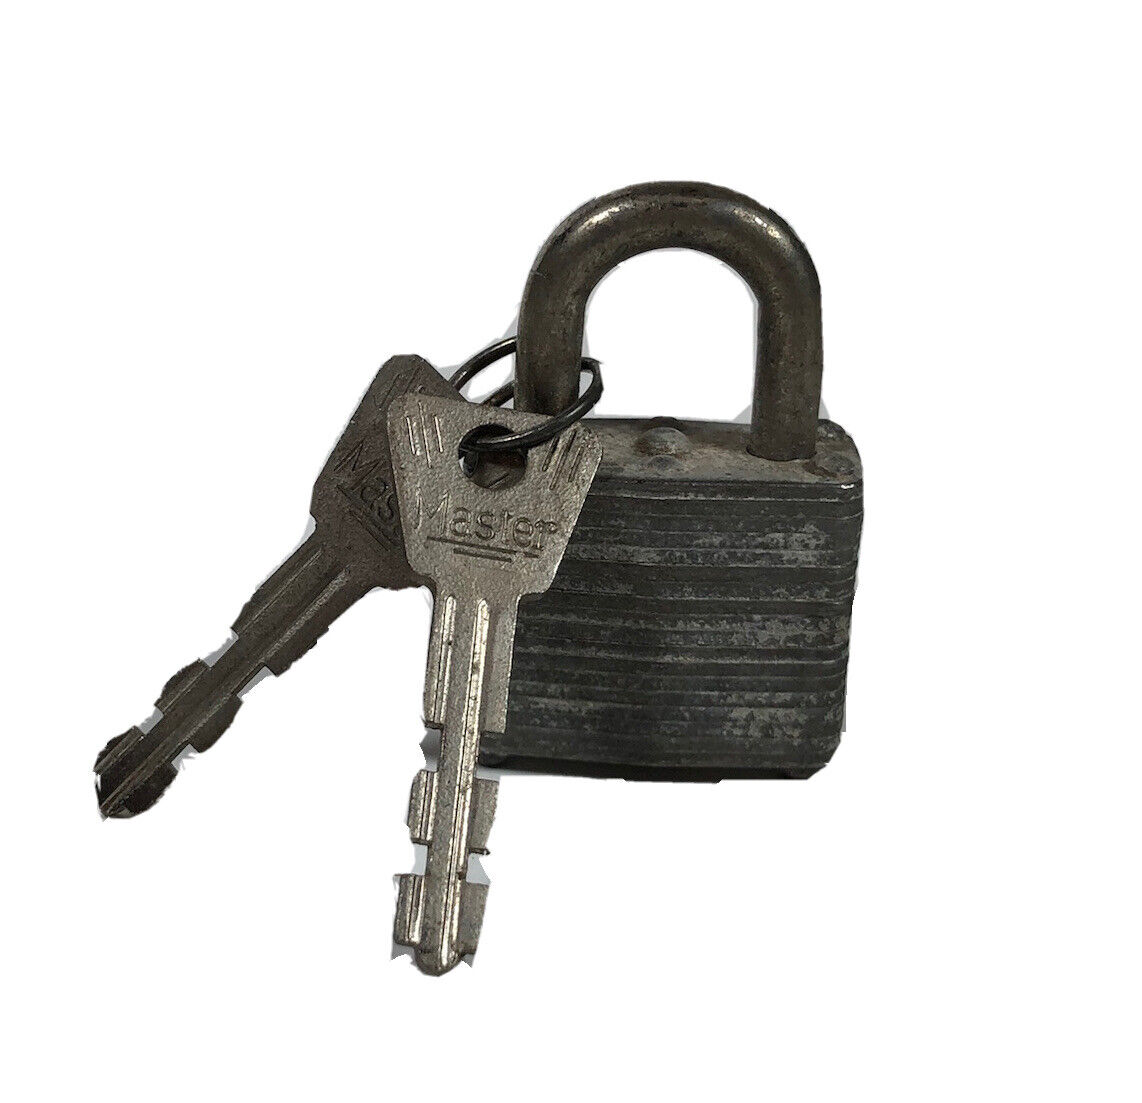 VTG Master Lock Stacked Steel Padlock Locks 2 Keys Excellent Condition, No 10